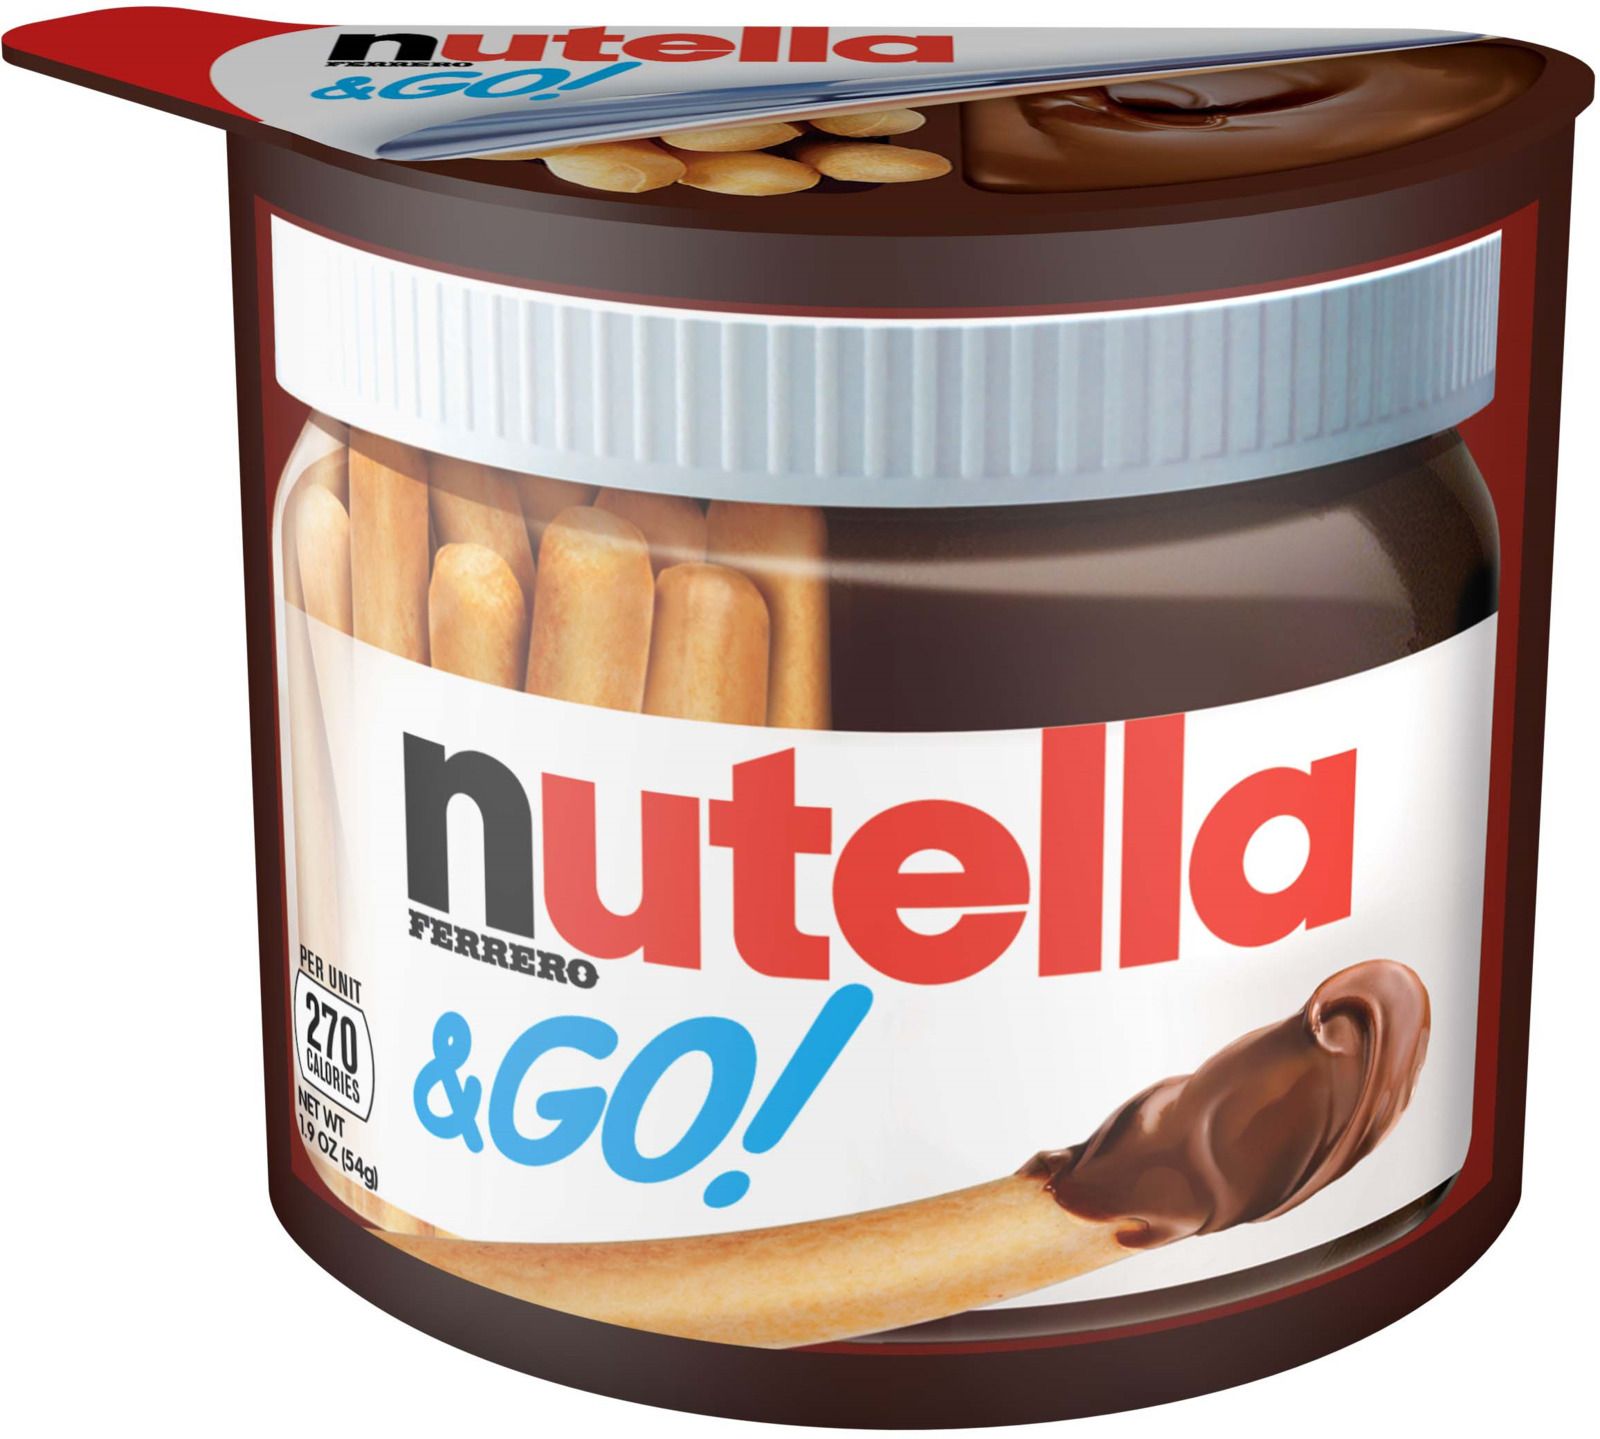        Nutella&Go,   , 52 